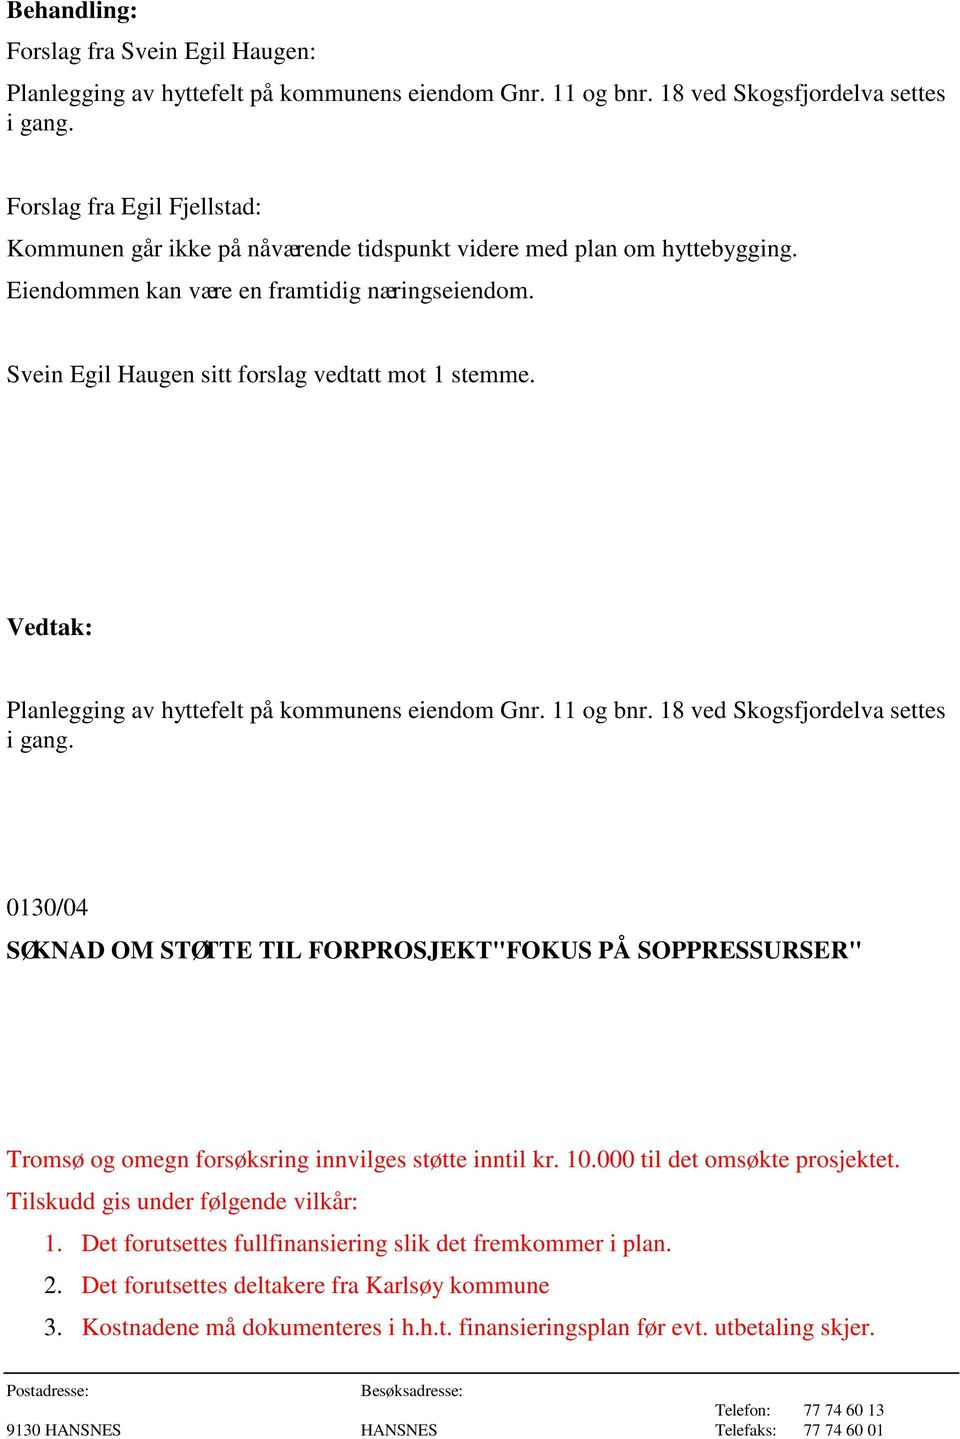 Svein Egil Haugen sitt forslag vedtatt mot 1 stemme. Planlegging av hyttefelt på kommunens eiendom Gnr. 11 og bnr. 18 ved Skogsfjordelva settes i gang.